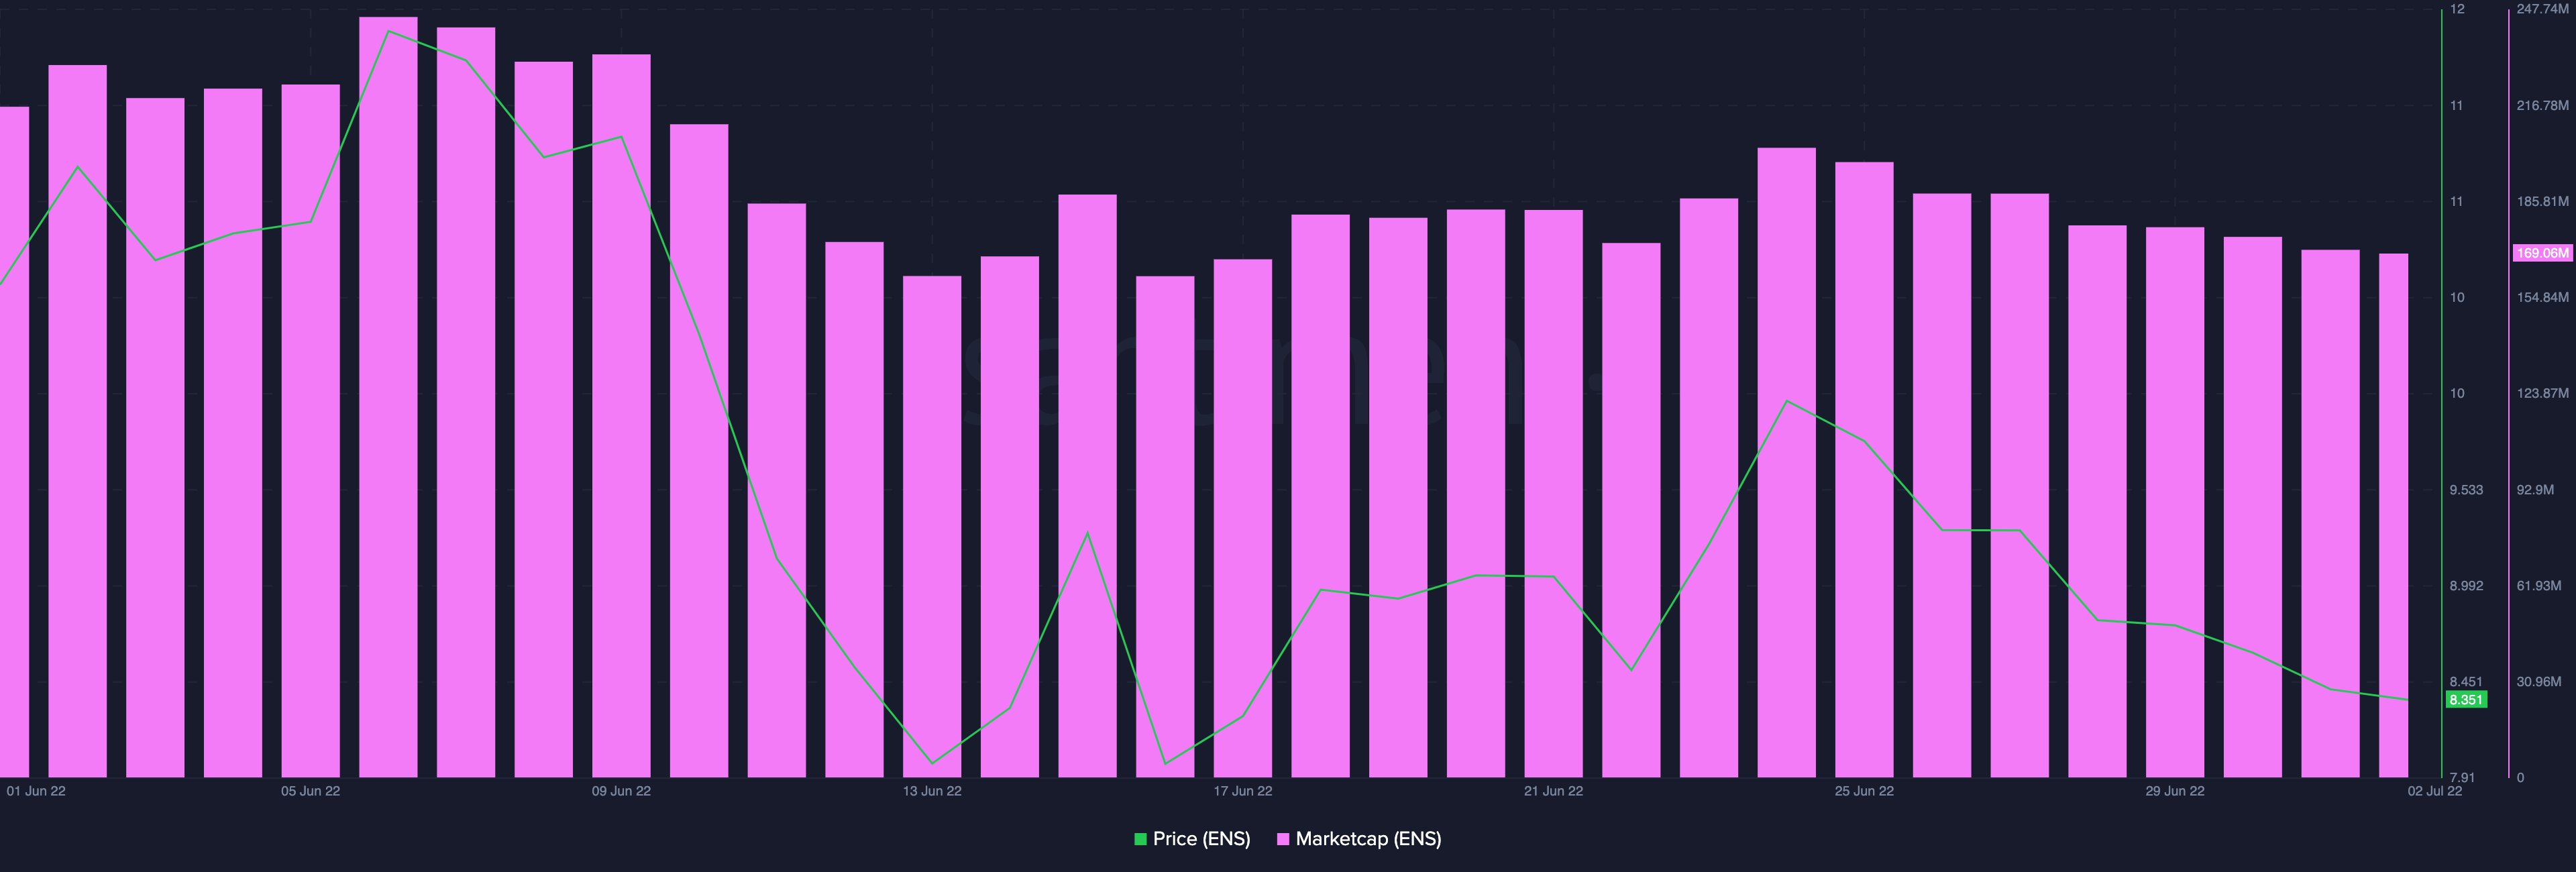 Dónde se encuentra el servicio de nombres de Ethereum después de una caída del 66 % desde los registros en mayo